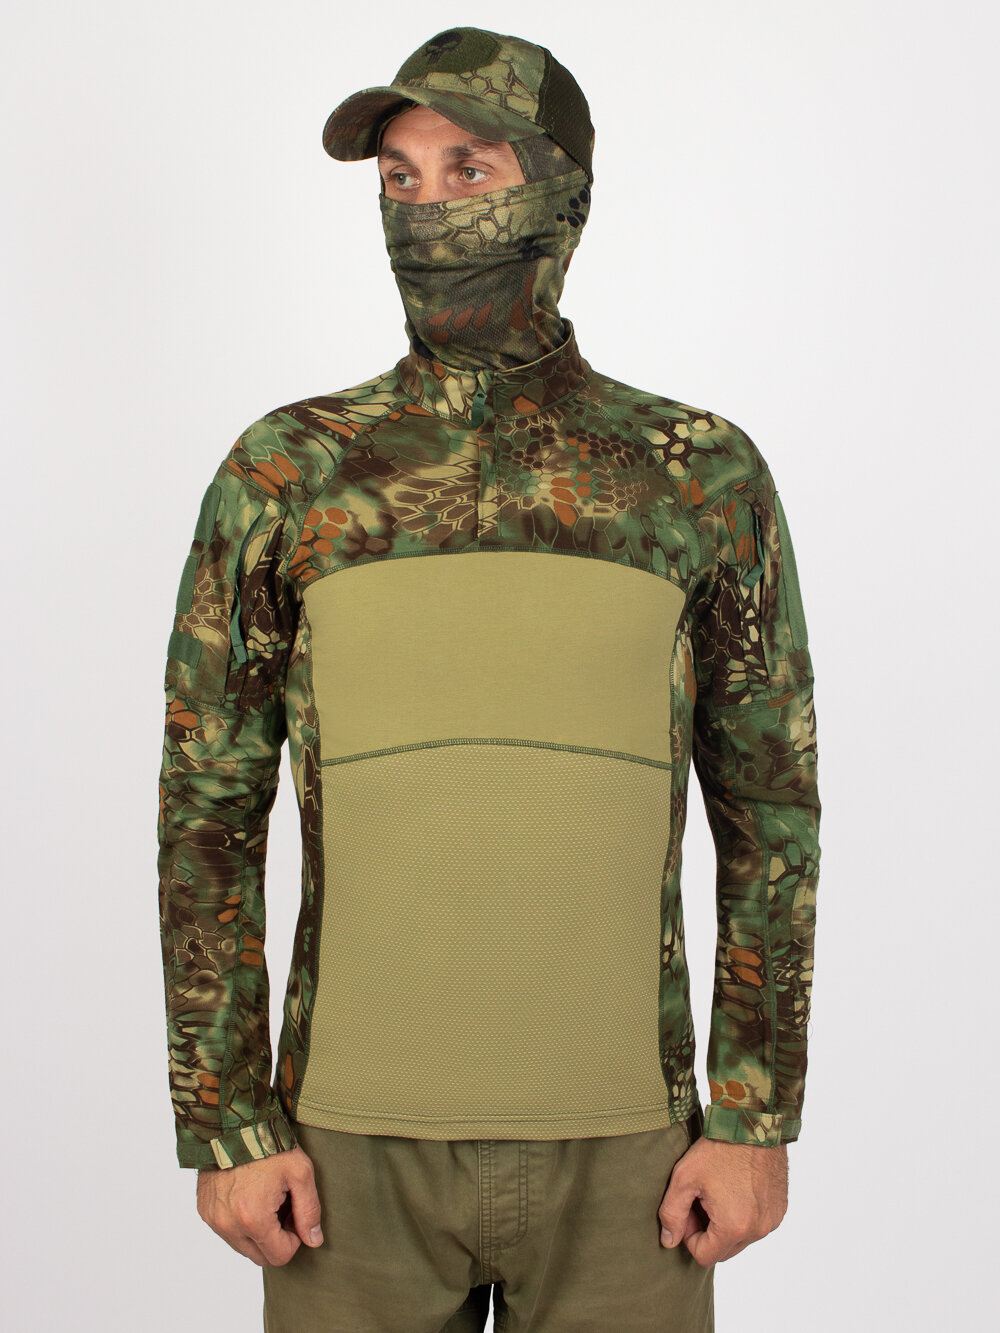 Рубашка тактическая Kamukamu цвет камуфляж Питон / Combat Shirt Python (размер: 50, рост: 176-182, размер производителя: xl)